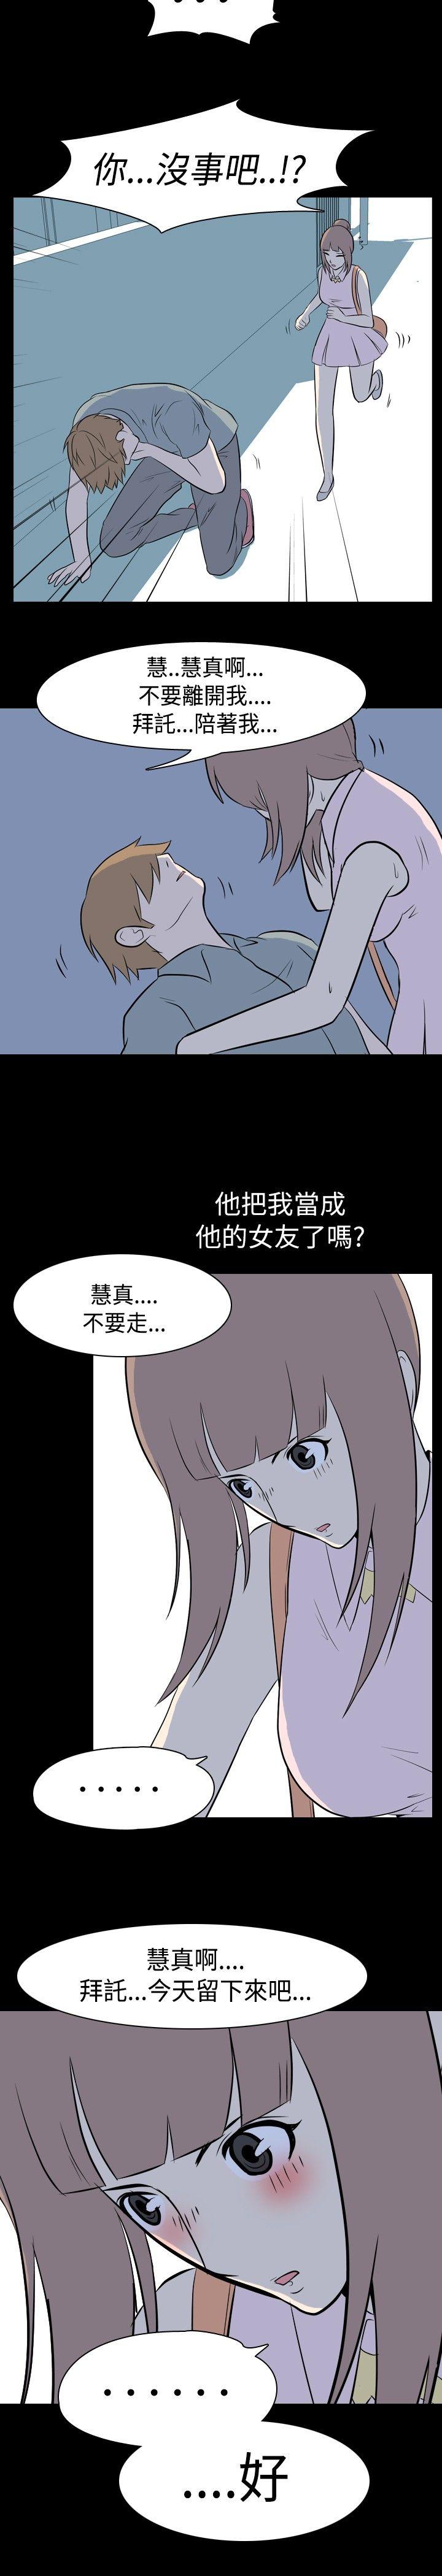 《我的色色夜说》漫画 第11话 - 暗恋(上)